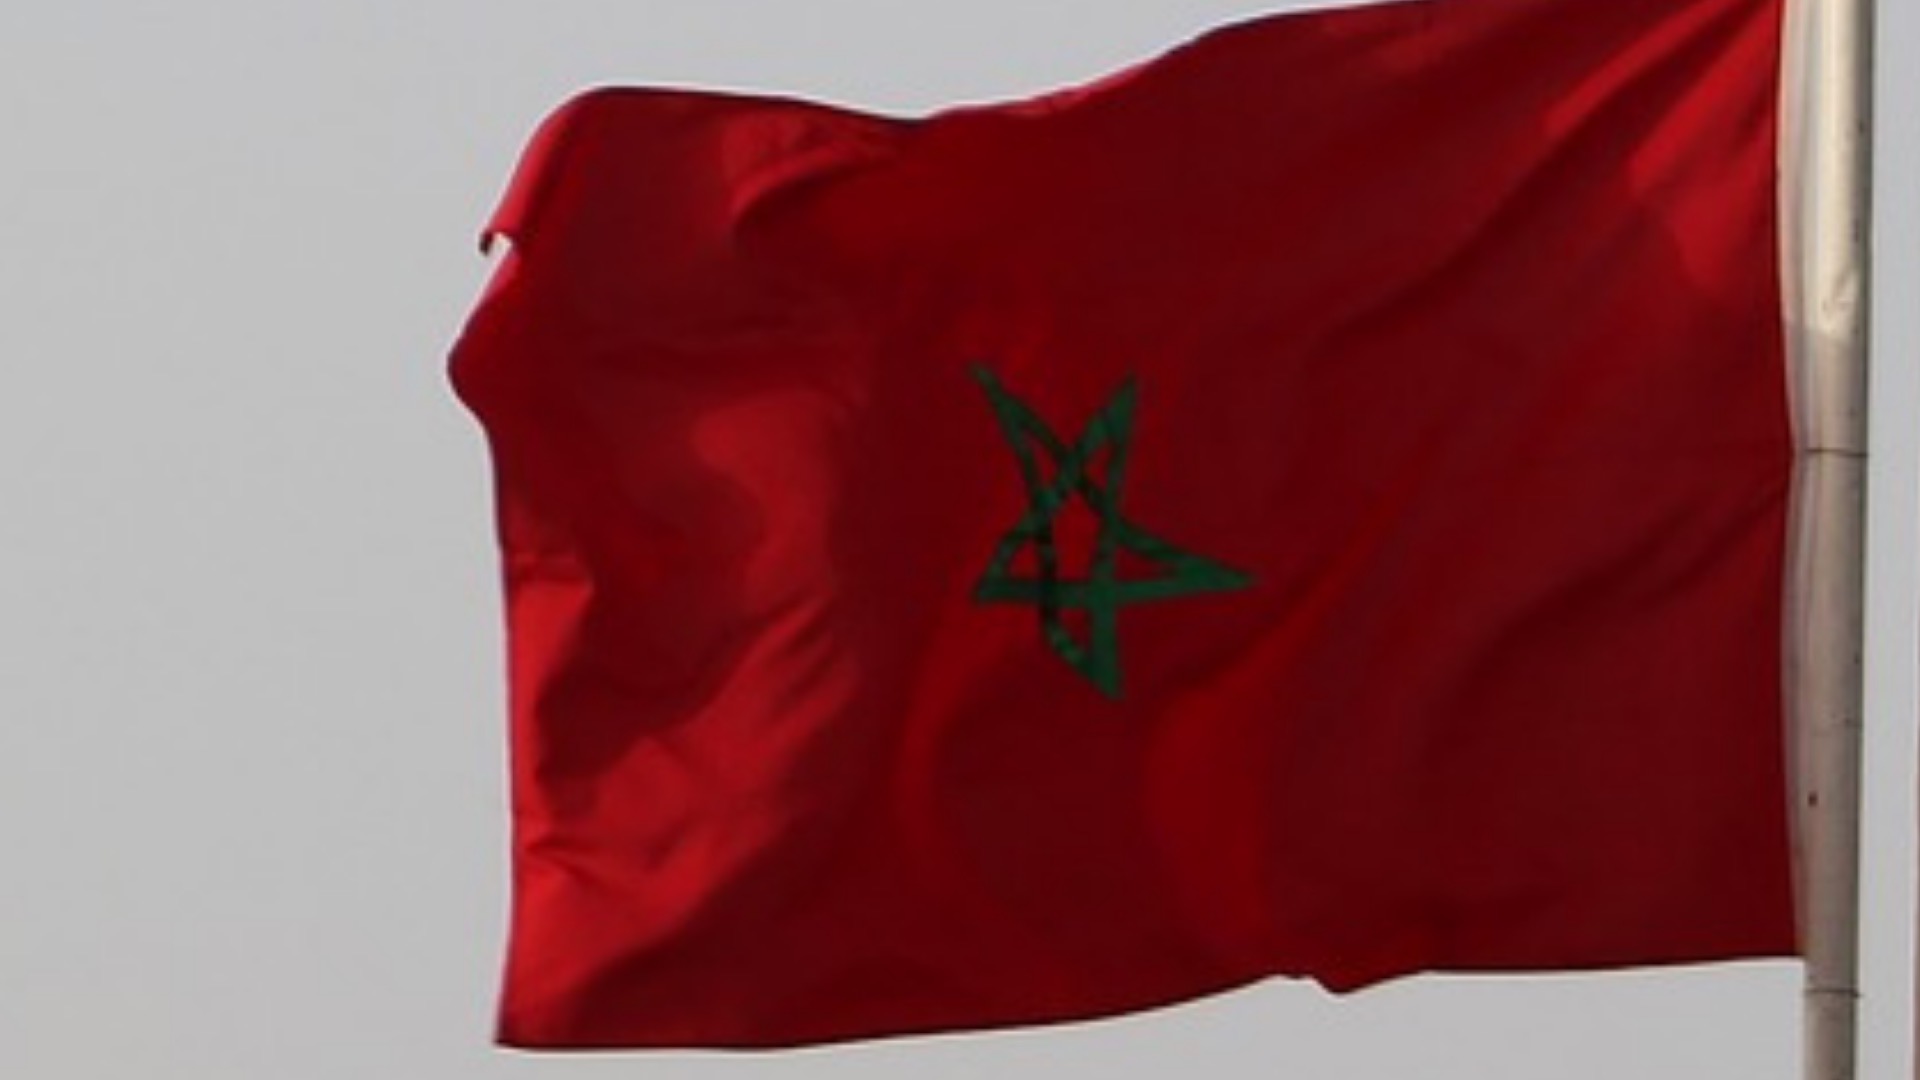 Trasporti internazionali Italia Marocco. Circolare MIT sulle difficolta delle autorita marocchine al rilascio degli Annex CEMT